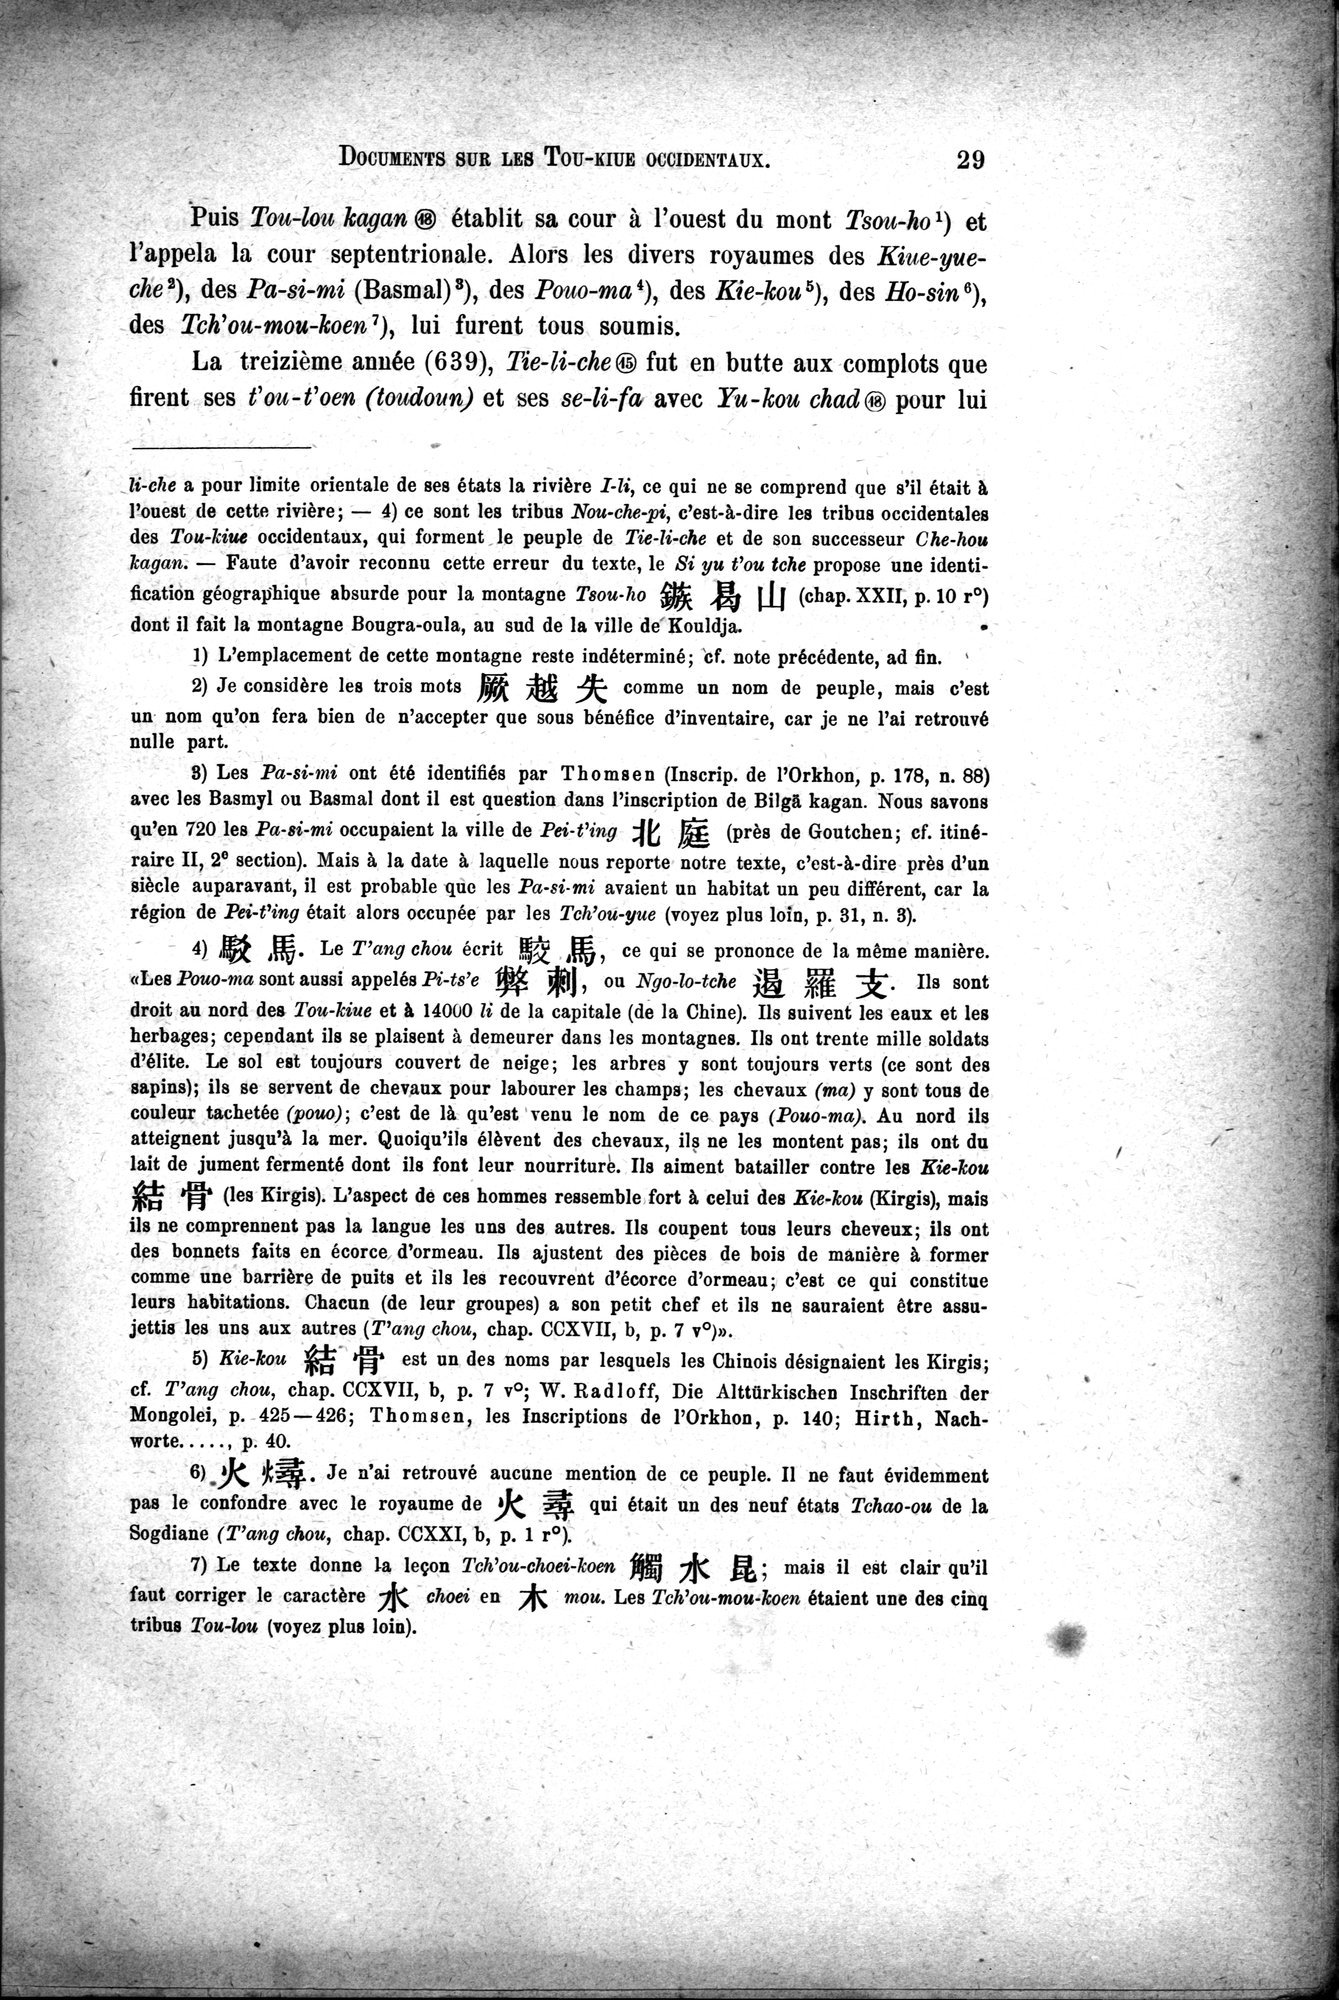 Documents sur les Tou-kiue (Turcs) occidentaux : vol.1 / Page 39 (Grayscale High Resolution Image)